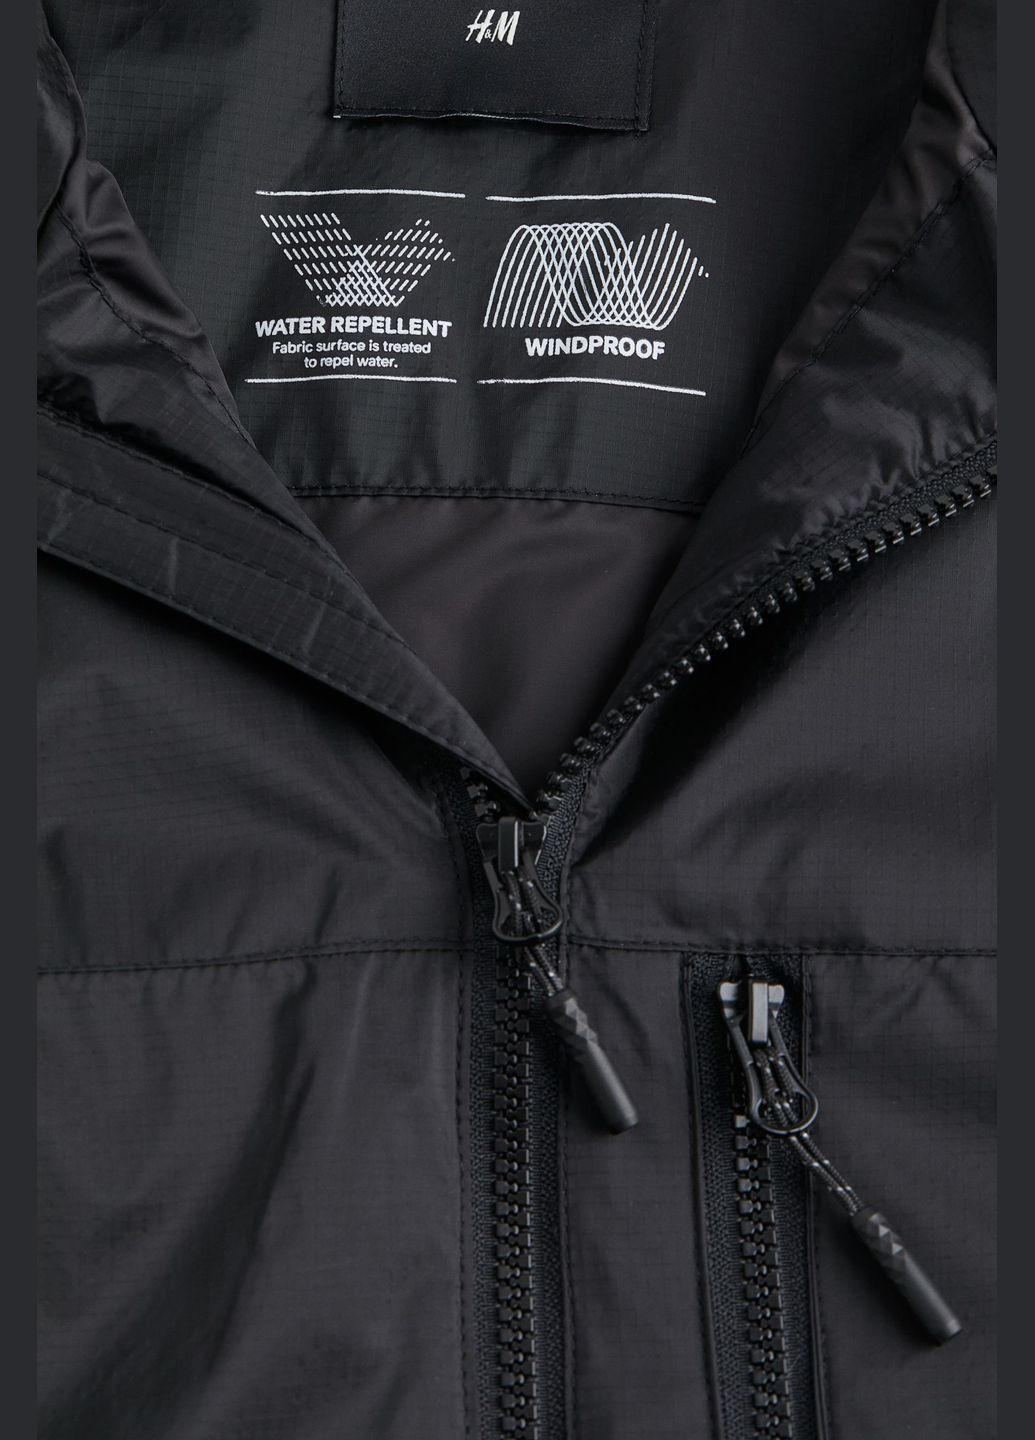 Черная демисезонная демисезонная мужская куртка без капюшона черная 1043408001 H&M